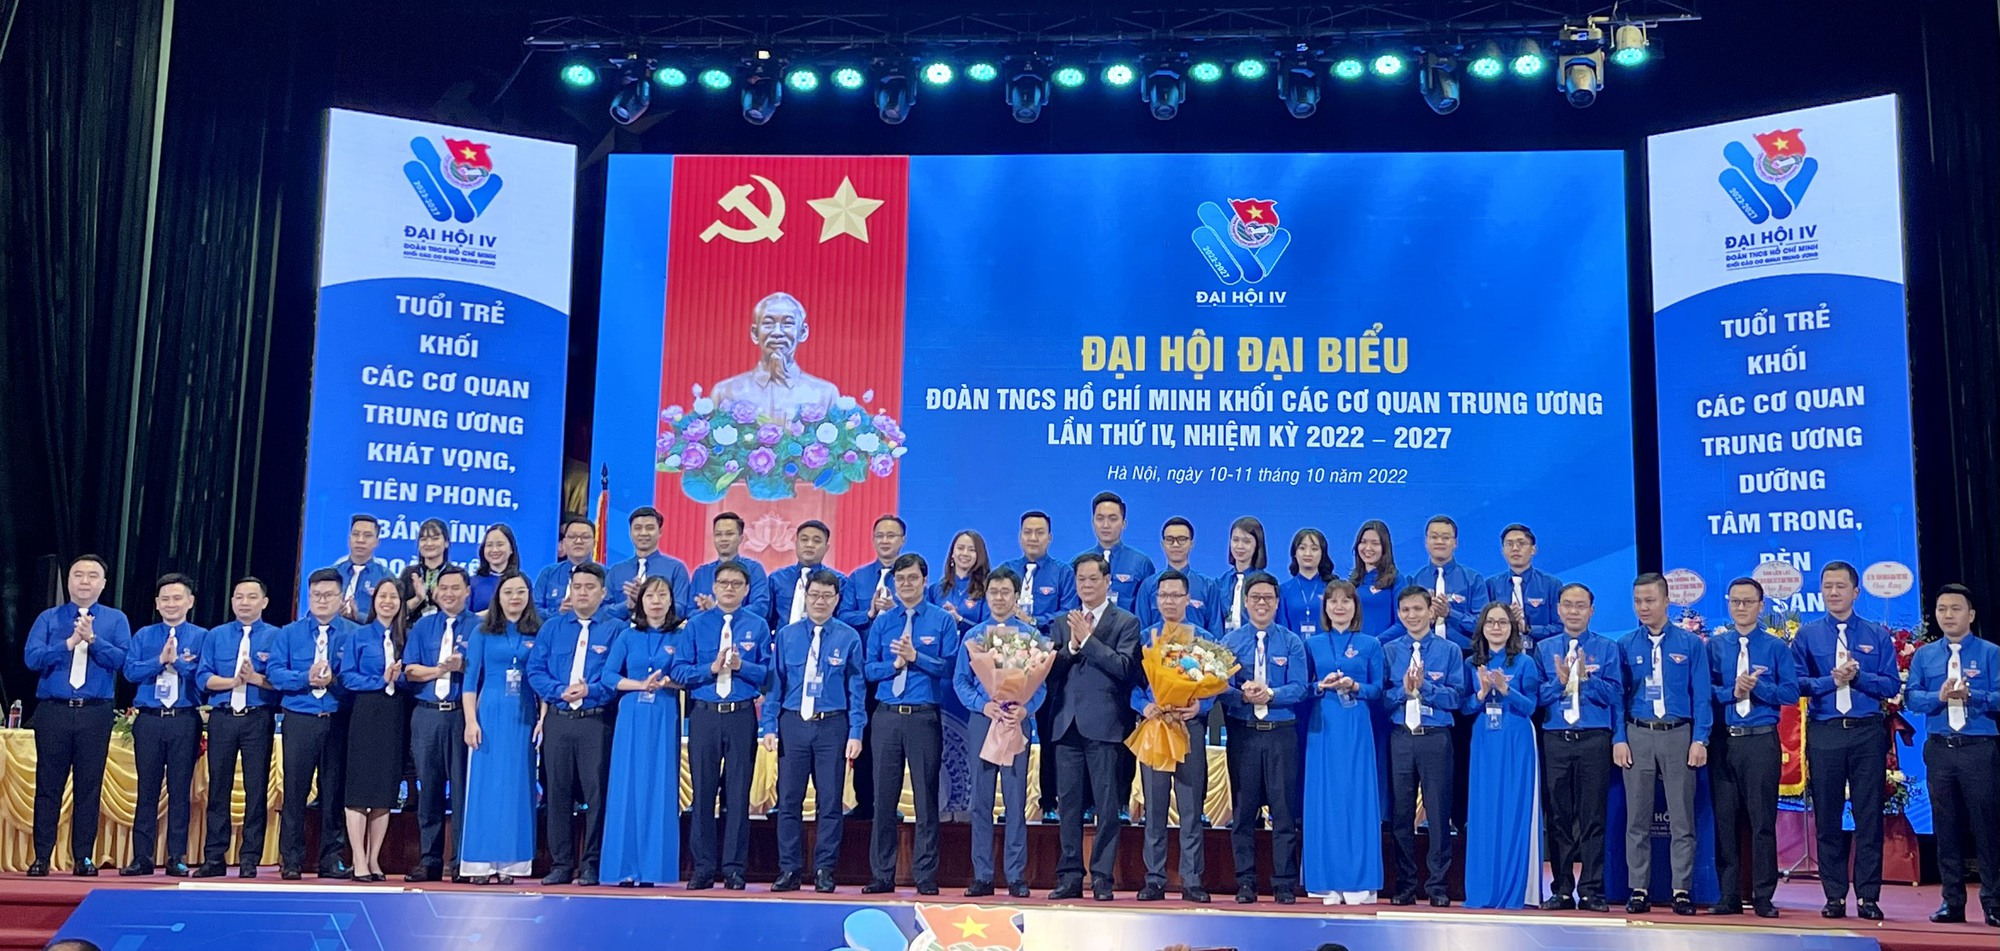 Bí thư Nguyễn Giao Linh trúng Ủy viên BCH Đoàn Khối các cơ quan Trung ương - Ảnh 1.